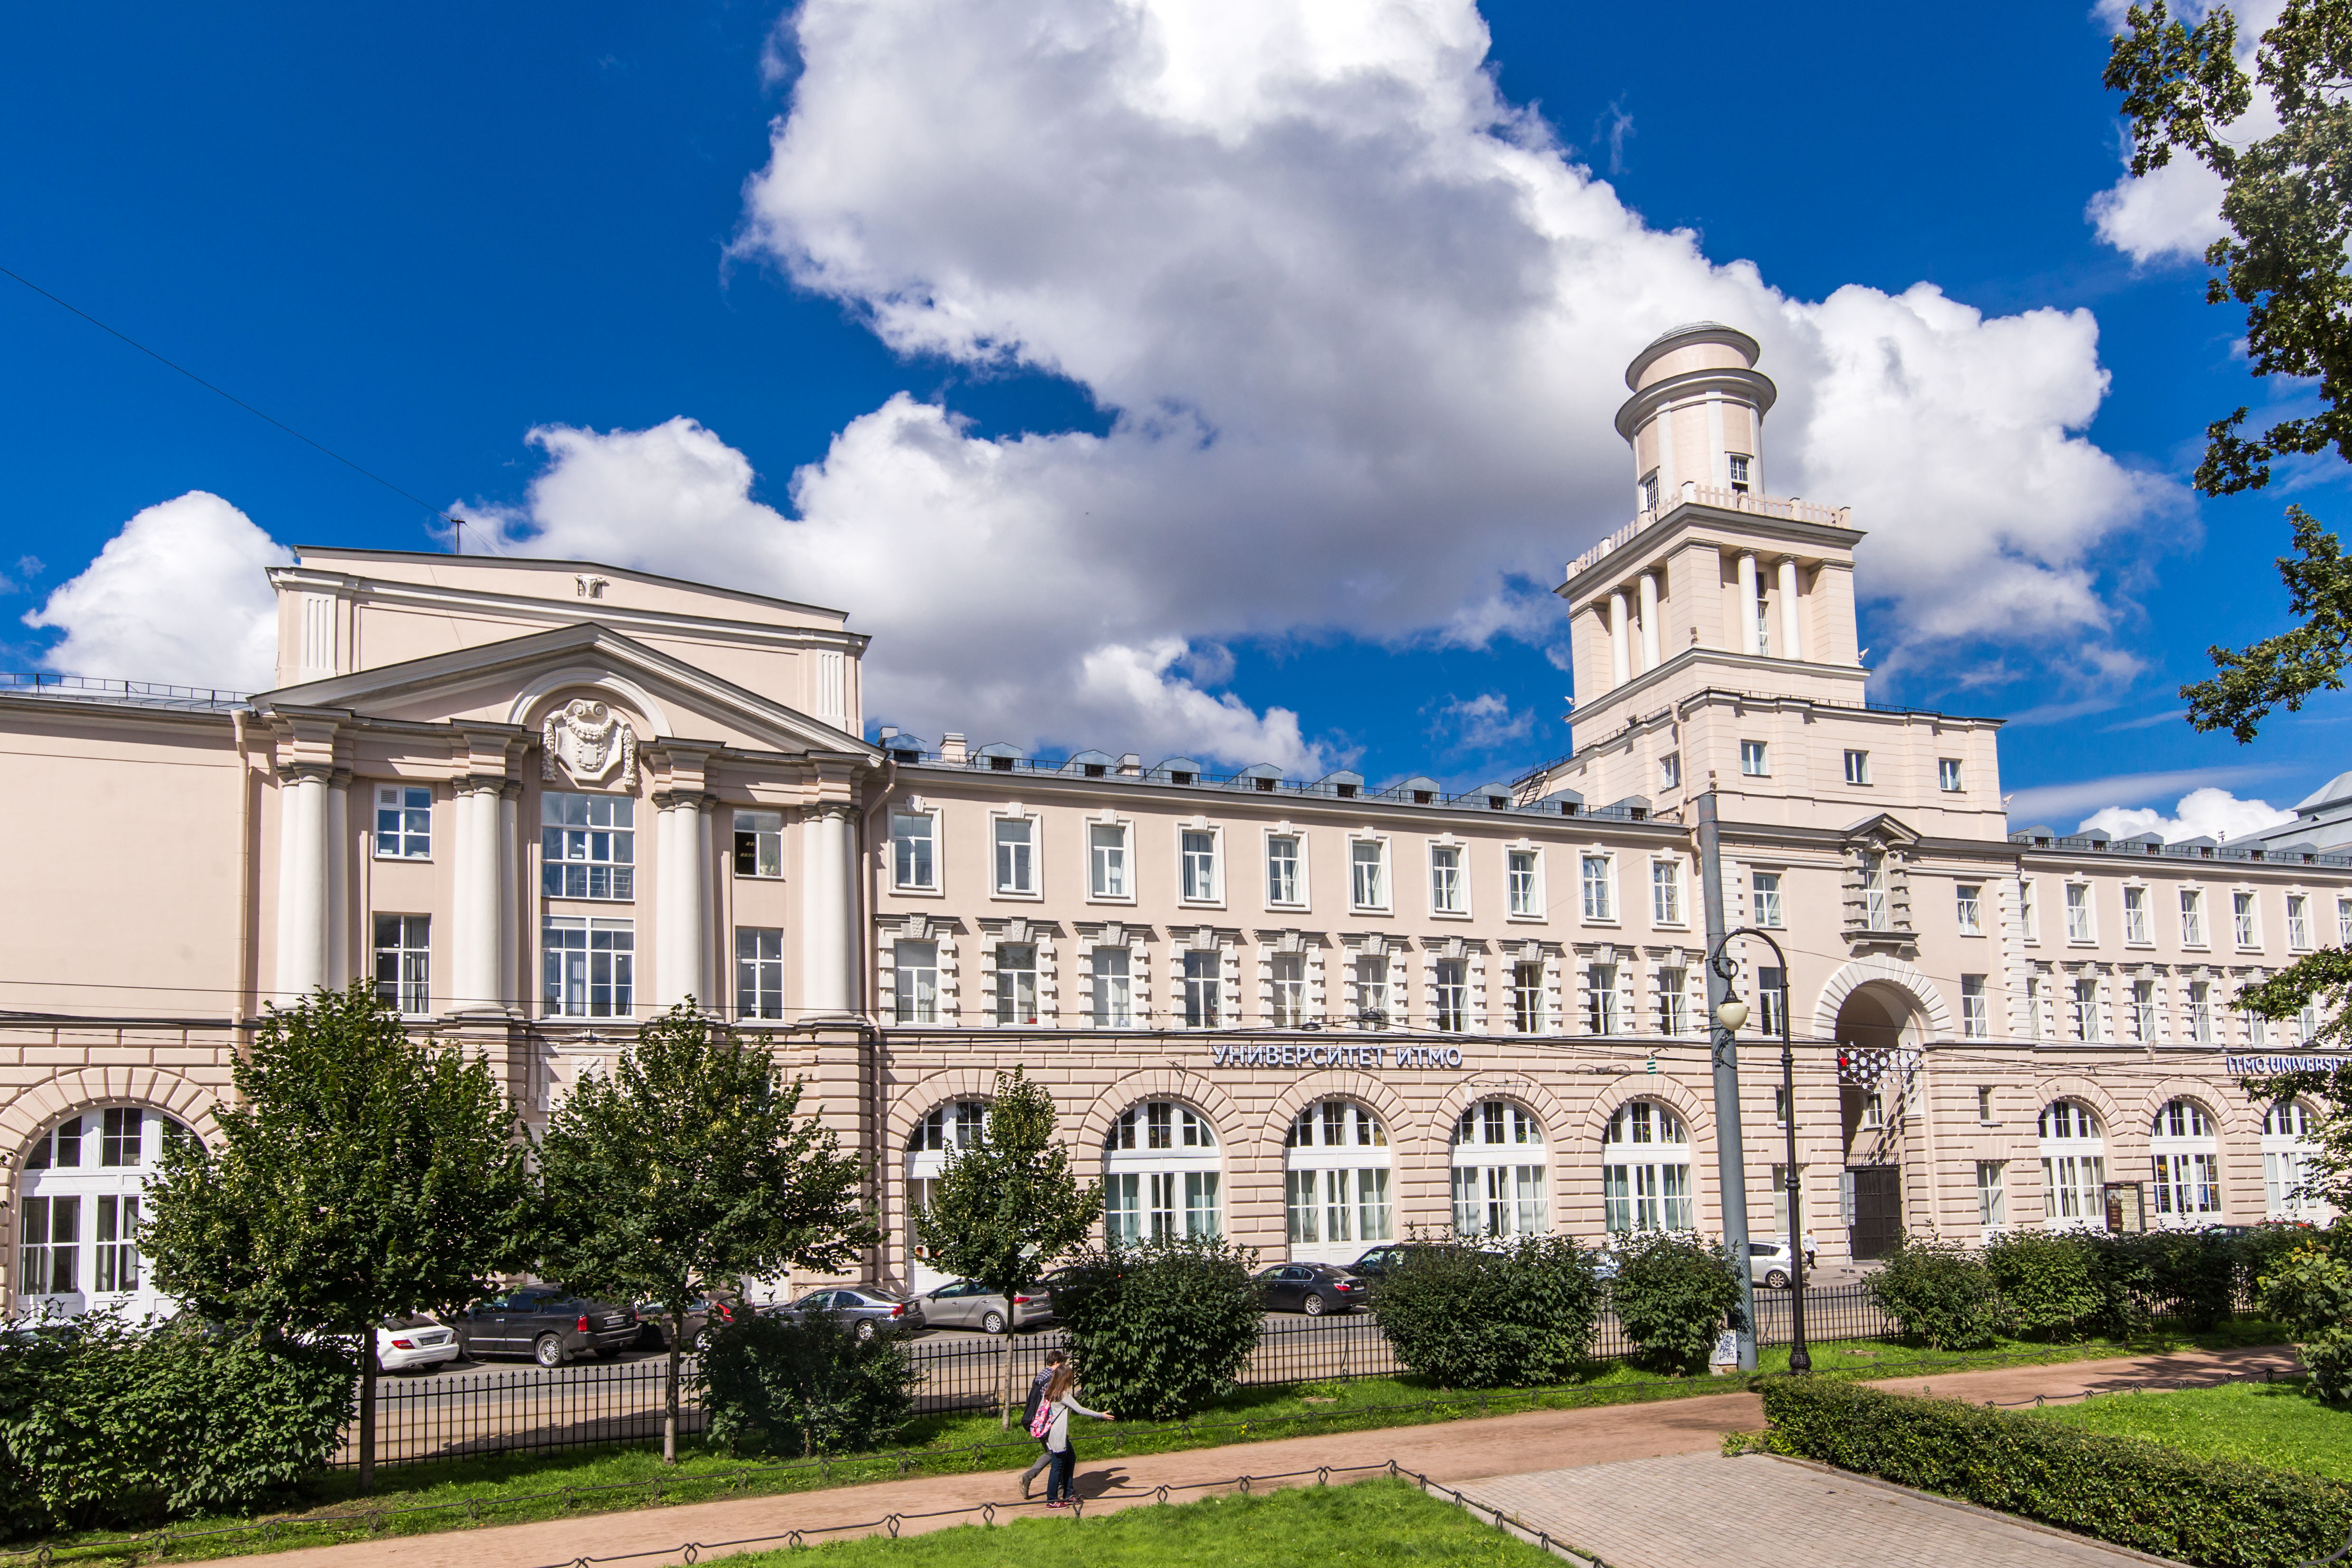 Nel ranking delle migliori università del mondo anche 24 atenei russi